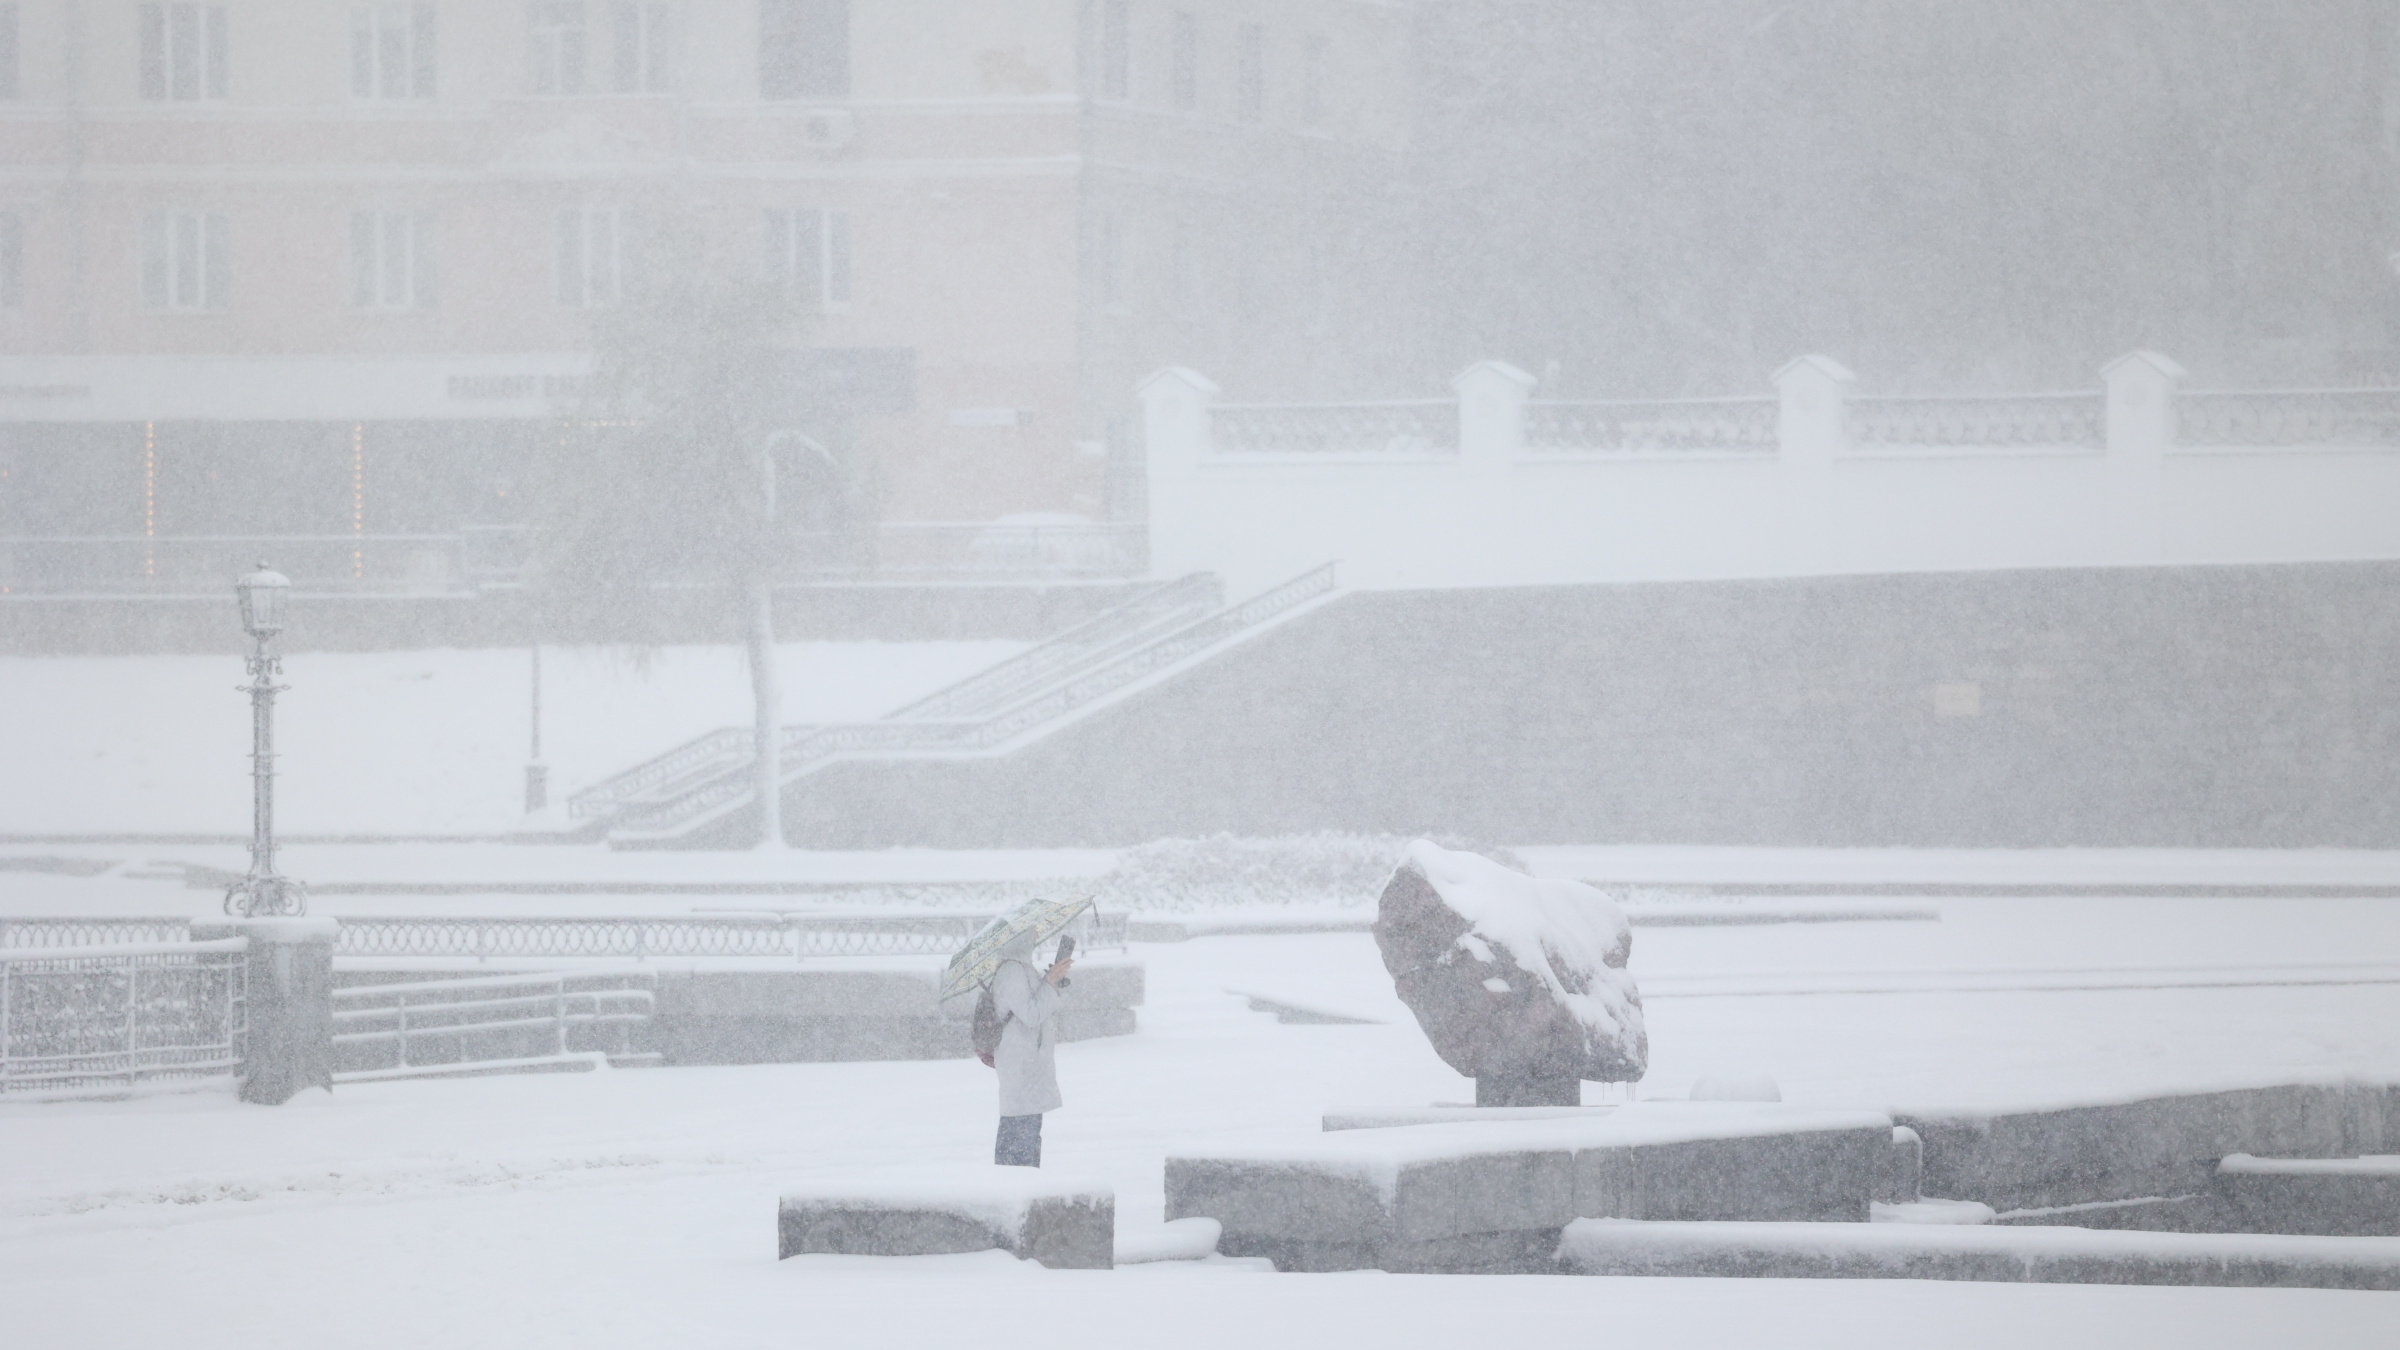 Екатеринбург утонул в адском снегопаде. Когда непогода закончится?